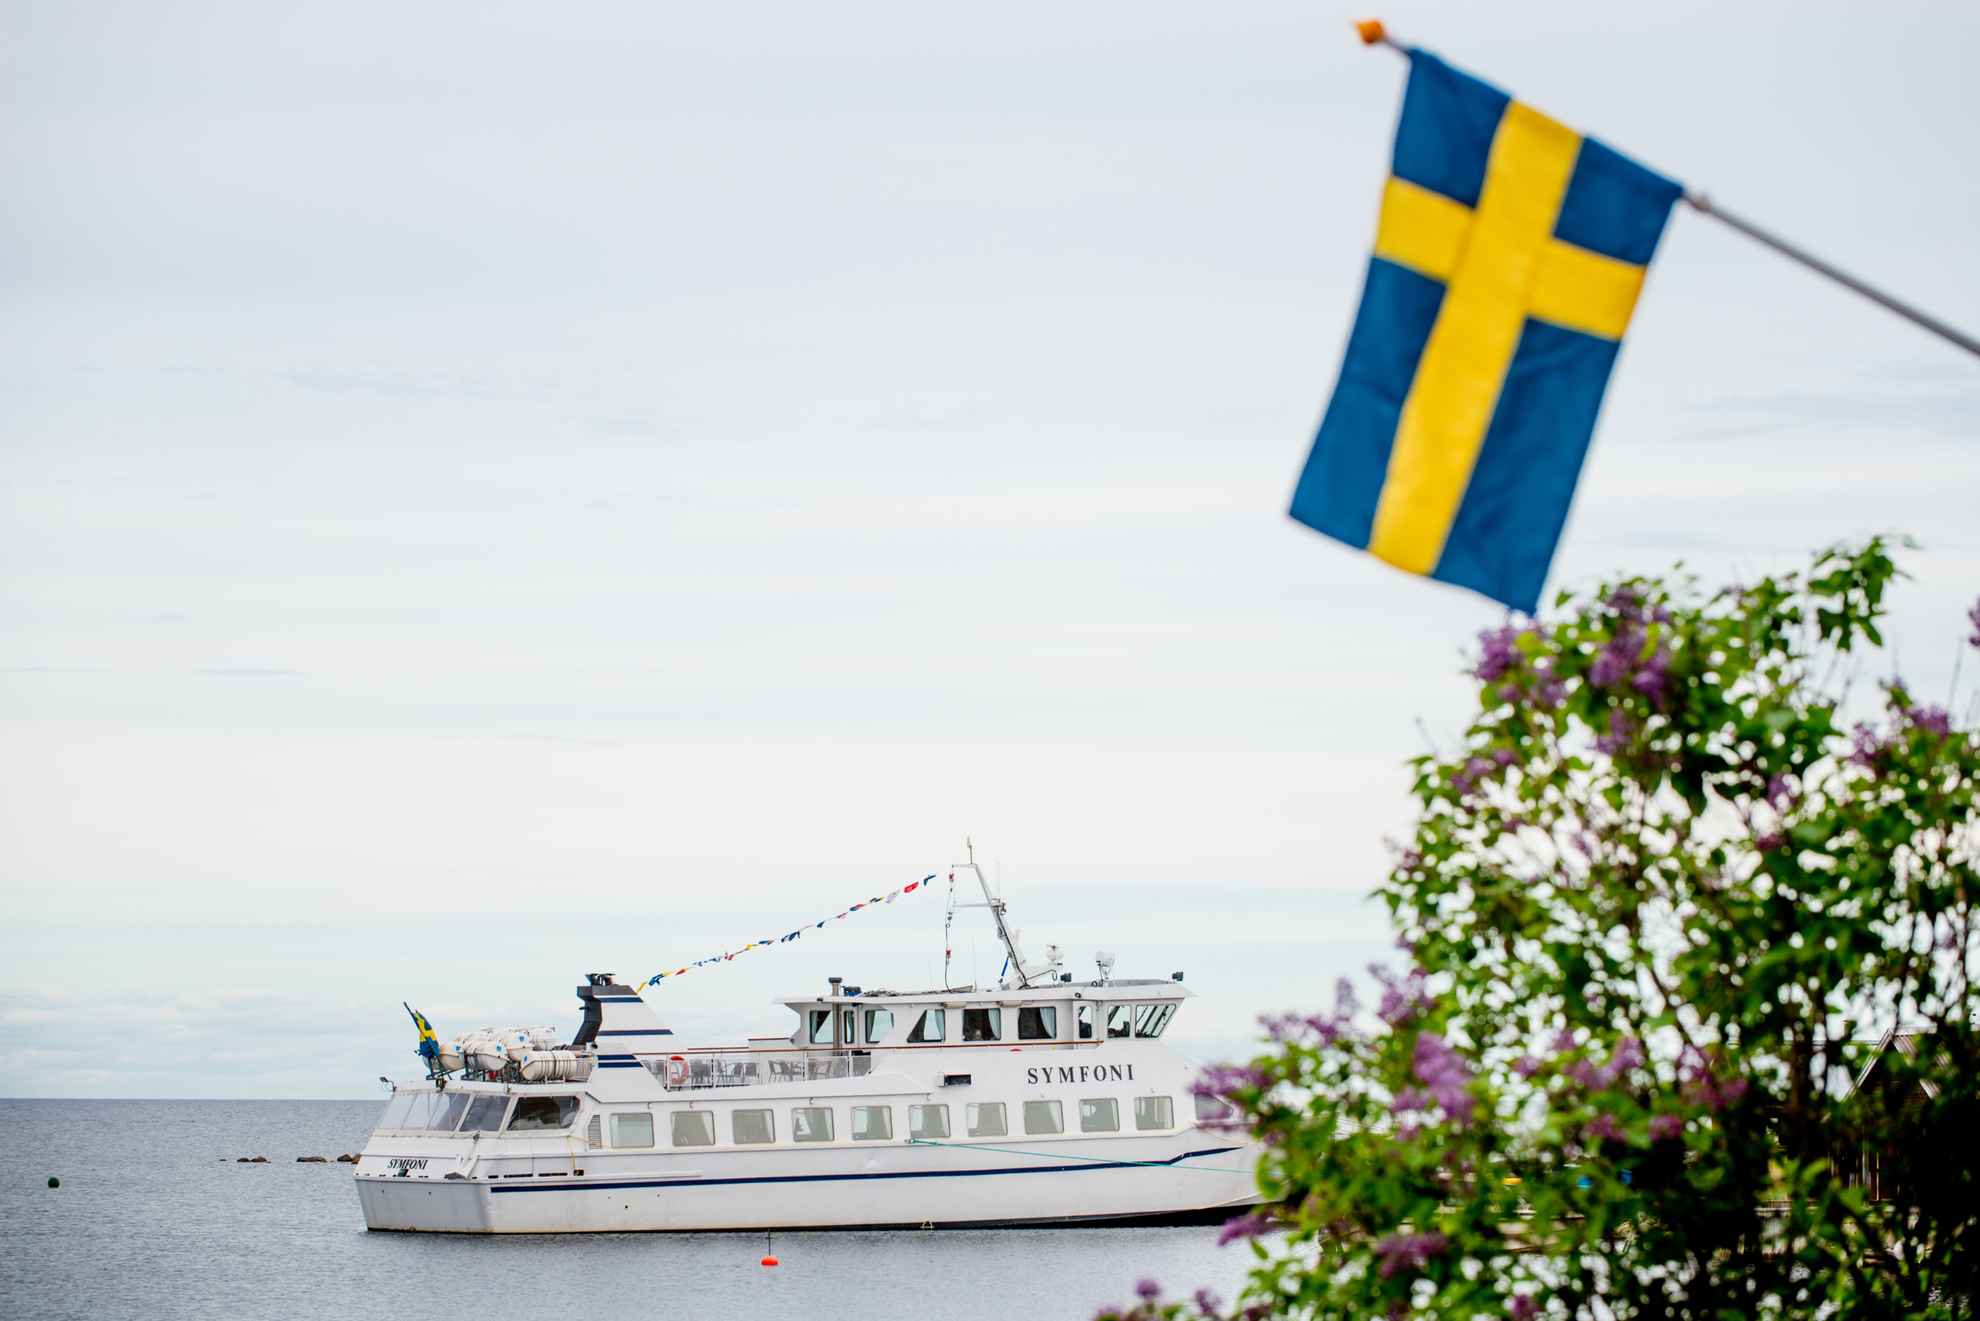 Ein Boot namens Symfoni schwimmt im Wasser, mit einer schwedischen Flagge und lila Blumen im Vordergrund.